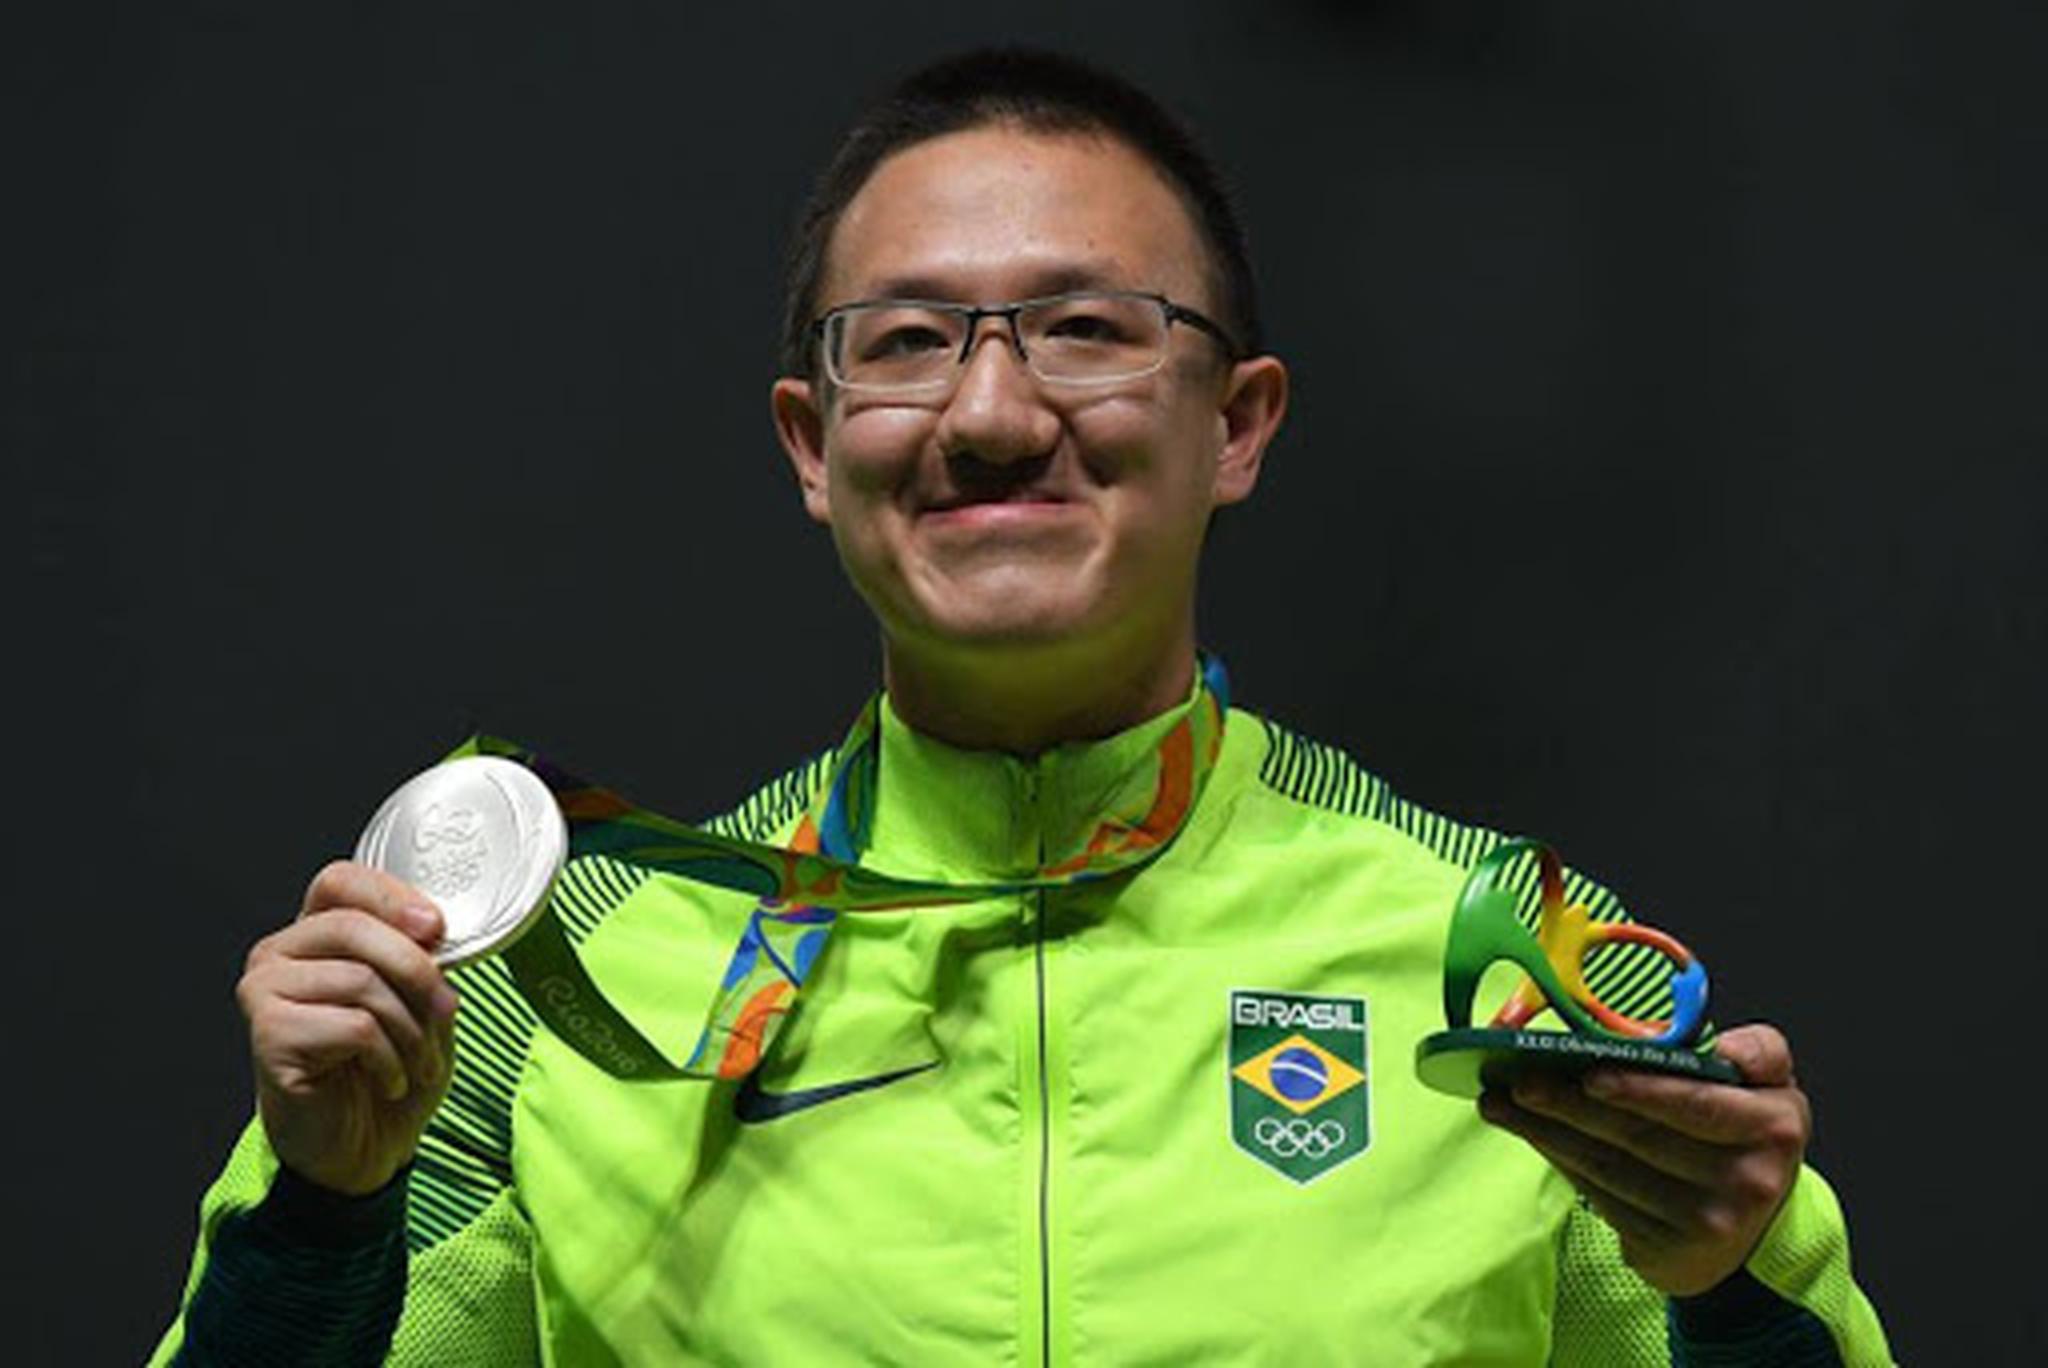 Medalhista de prata nas Olimpíadas do Rio de Janeiro, Felipe Wu, do Tiro Esportivo, recebeu o Bolsa Atleta